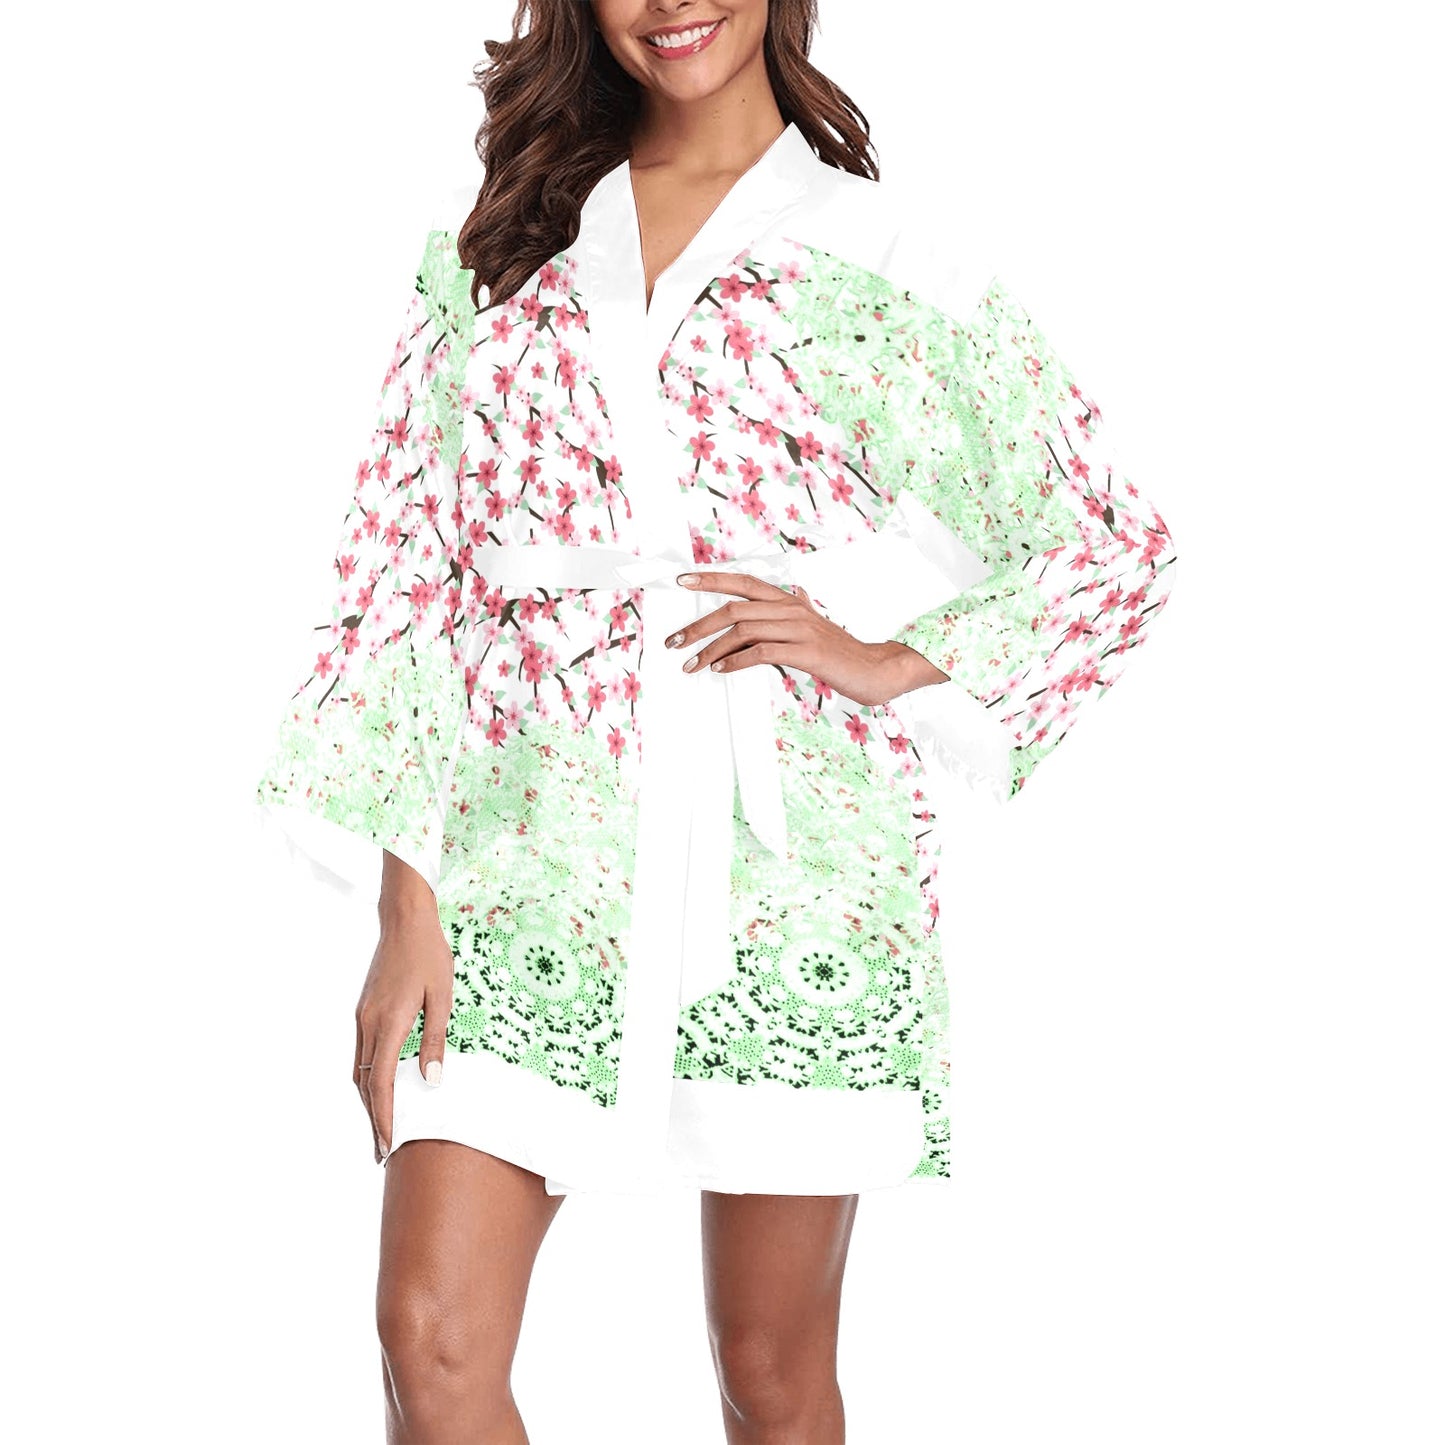 Victorian Lace Kimono Robe, Black or White Trim, Sizes XS to 2XL, Design 10